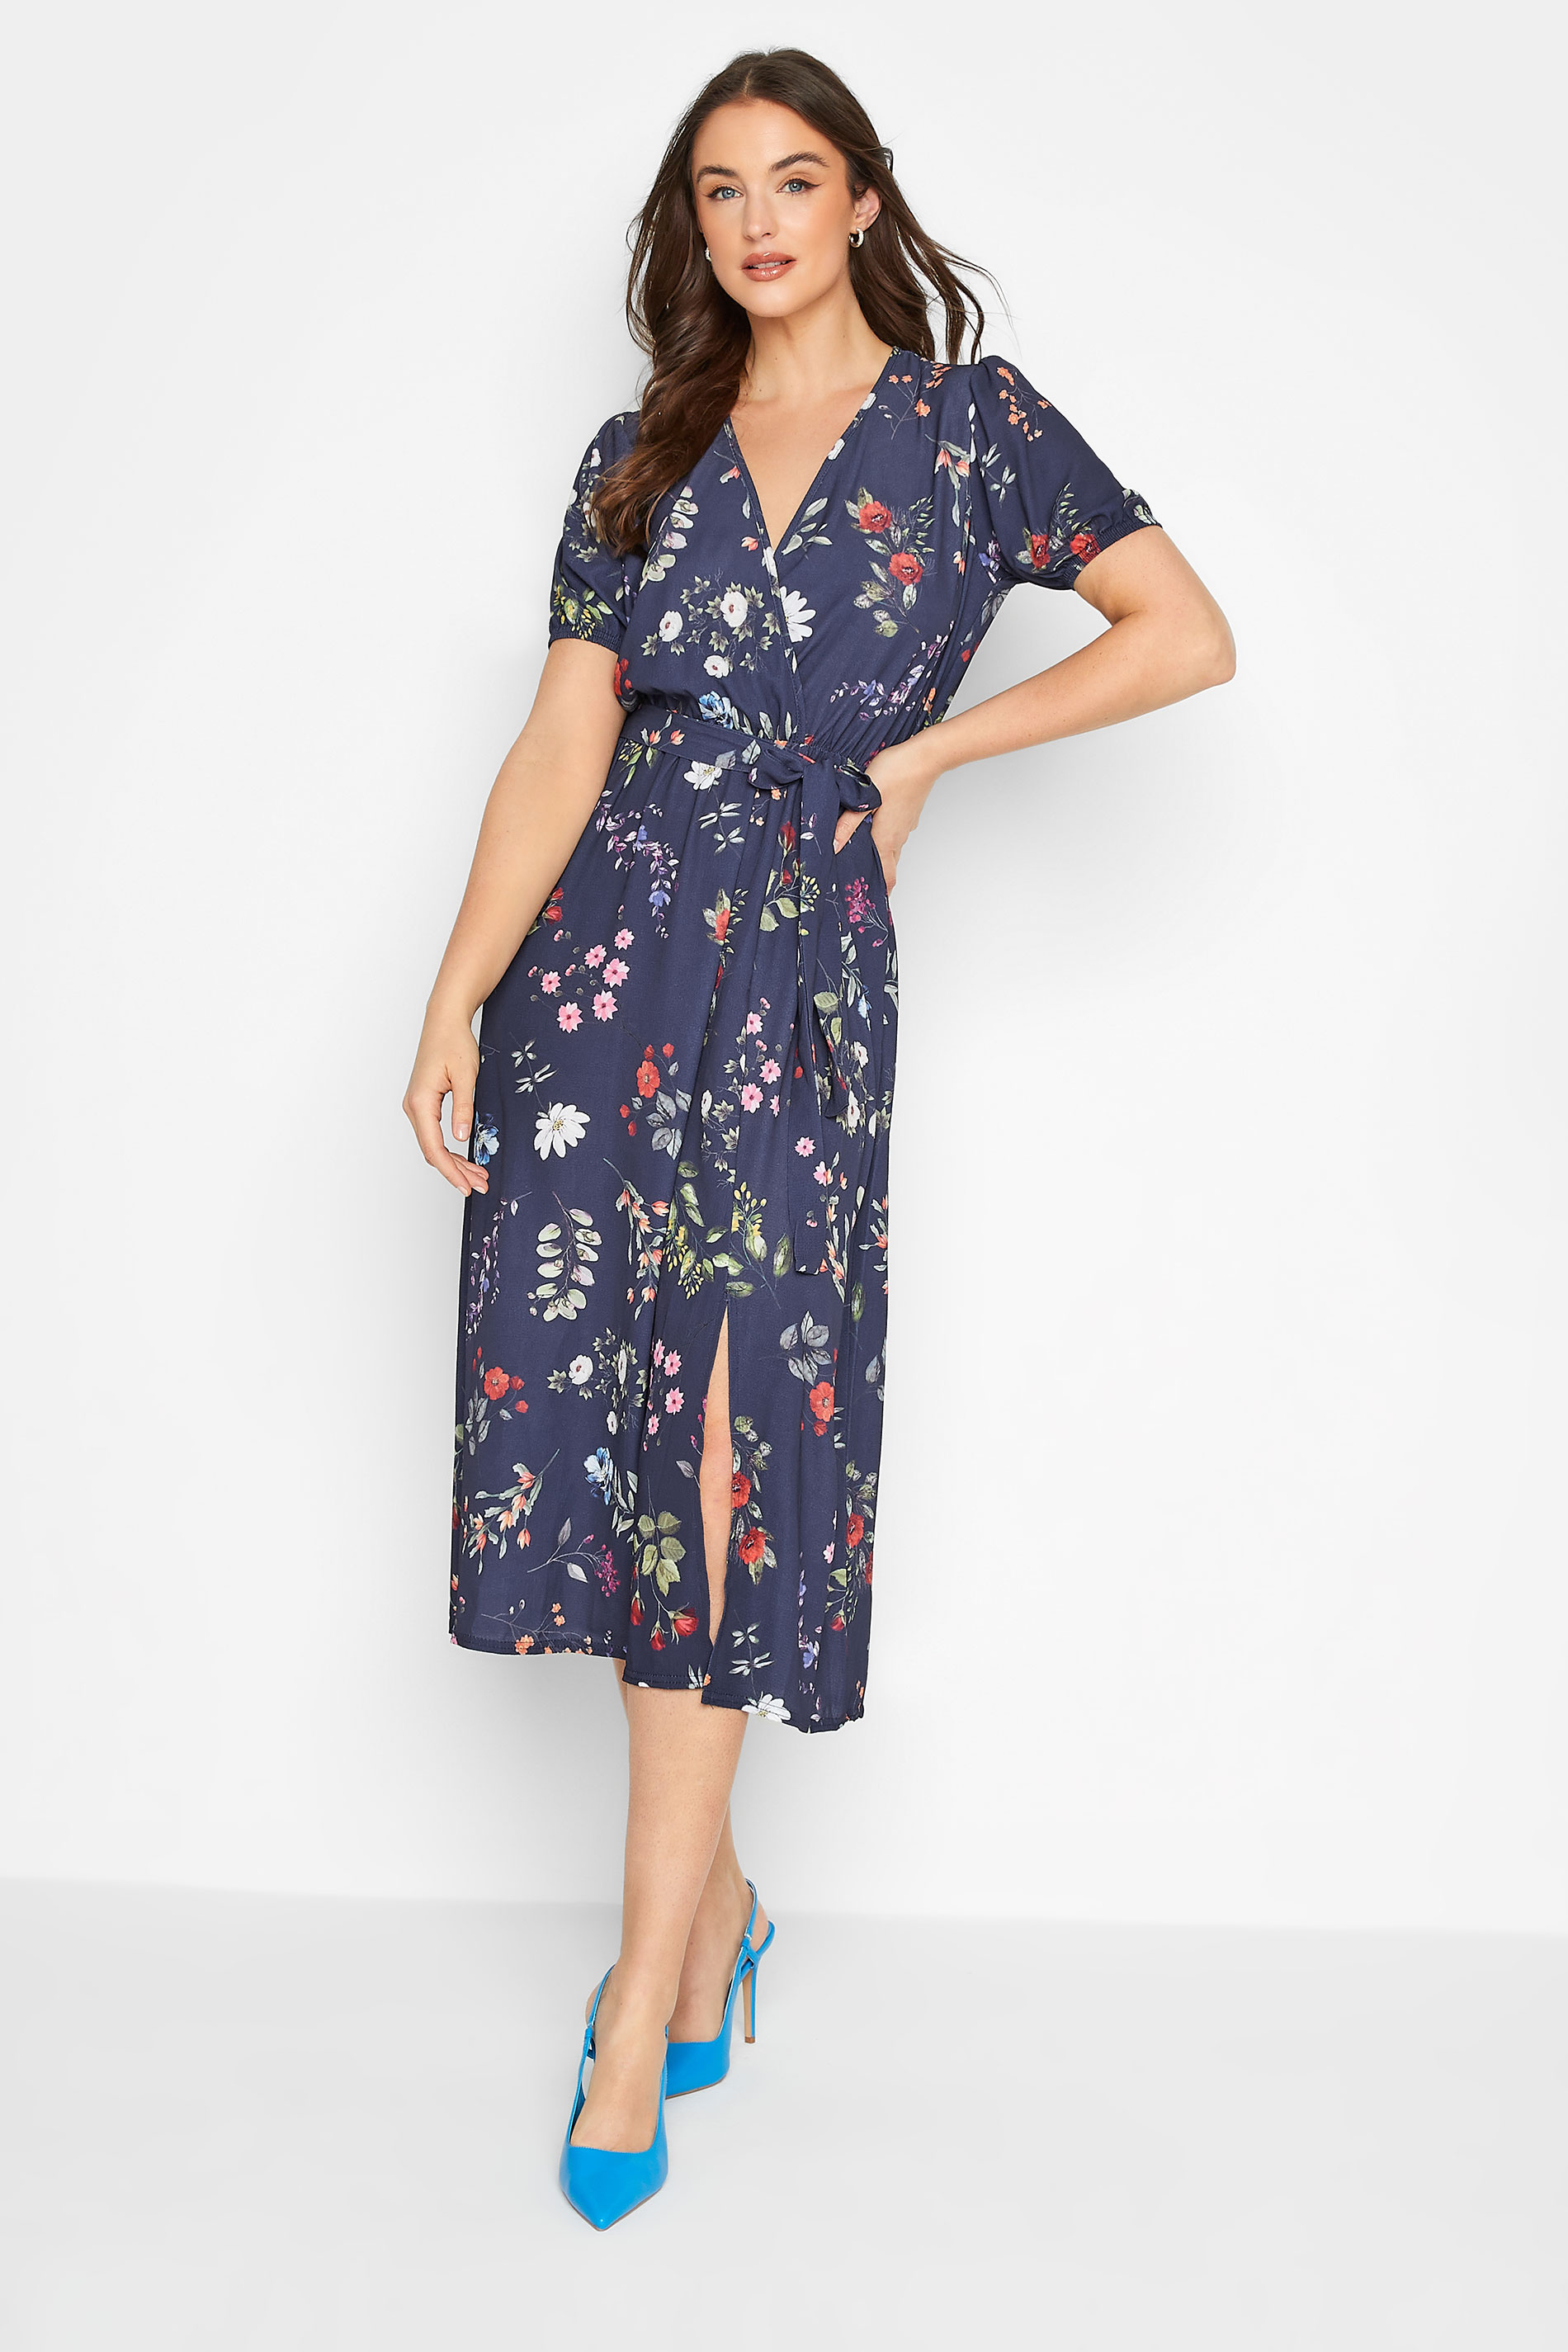 LTS Tall Women's Navy Blue Floral Wrap Dress | Long Tall Sally 1